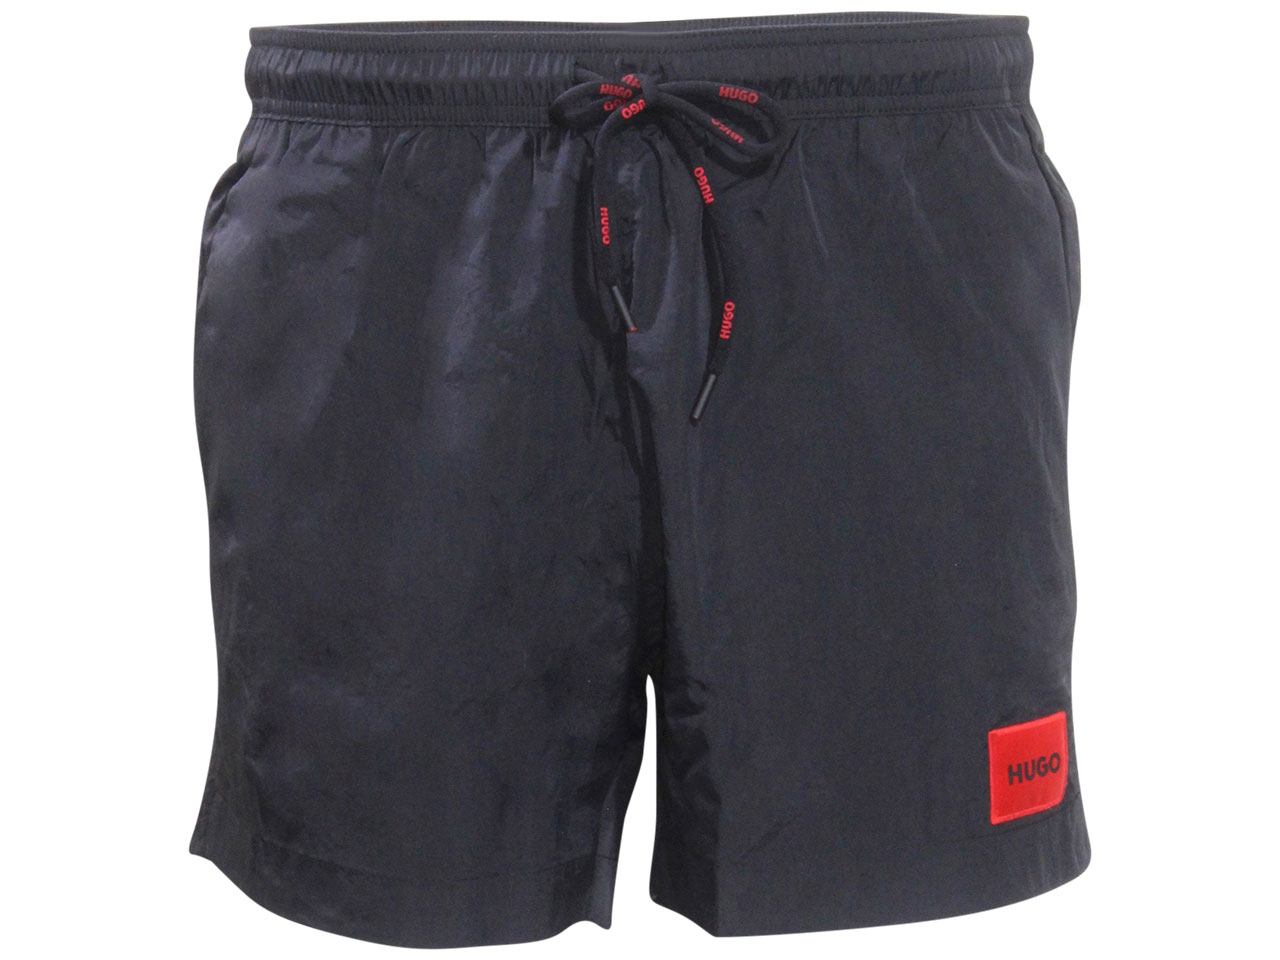 Hugo Boss Men's Dominica Swimwear Shorts Swim Trunks Quick Dry Black Sz ...